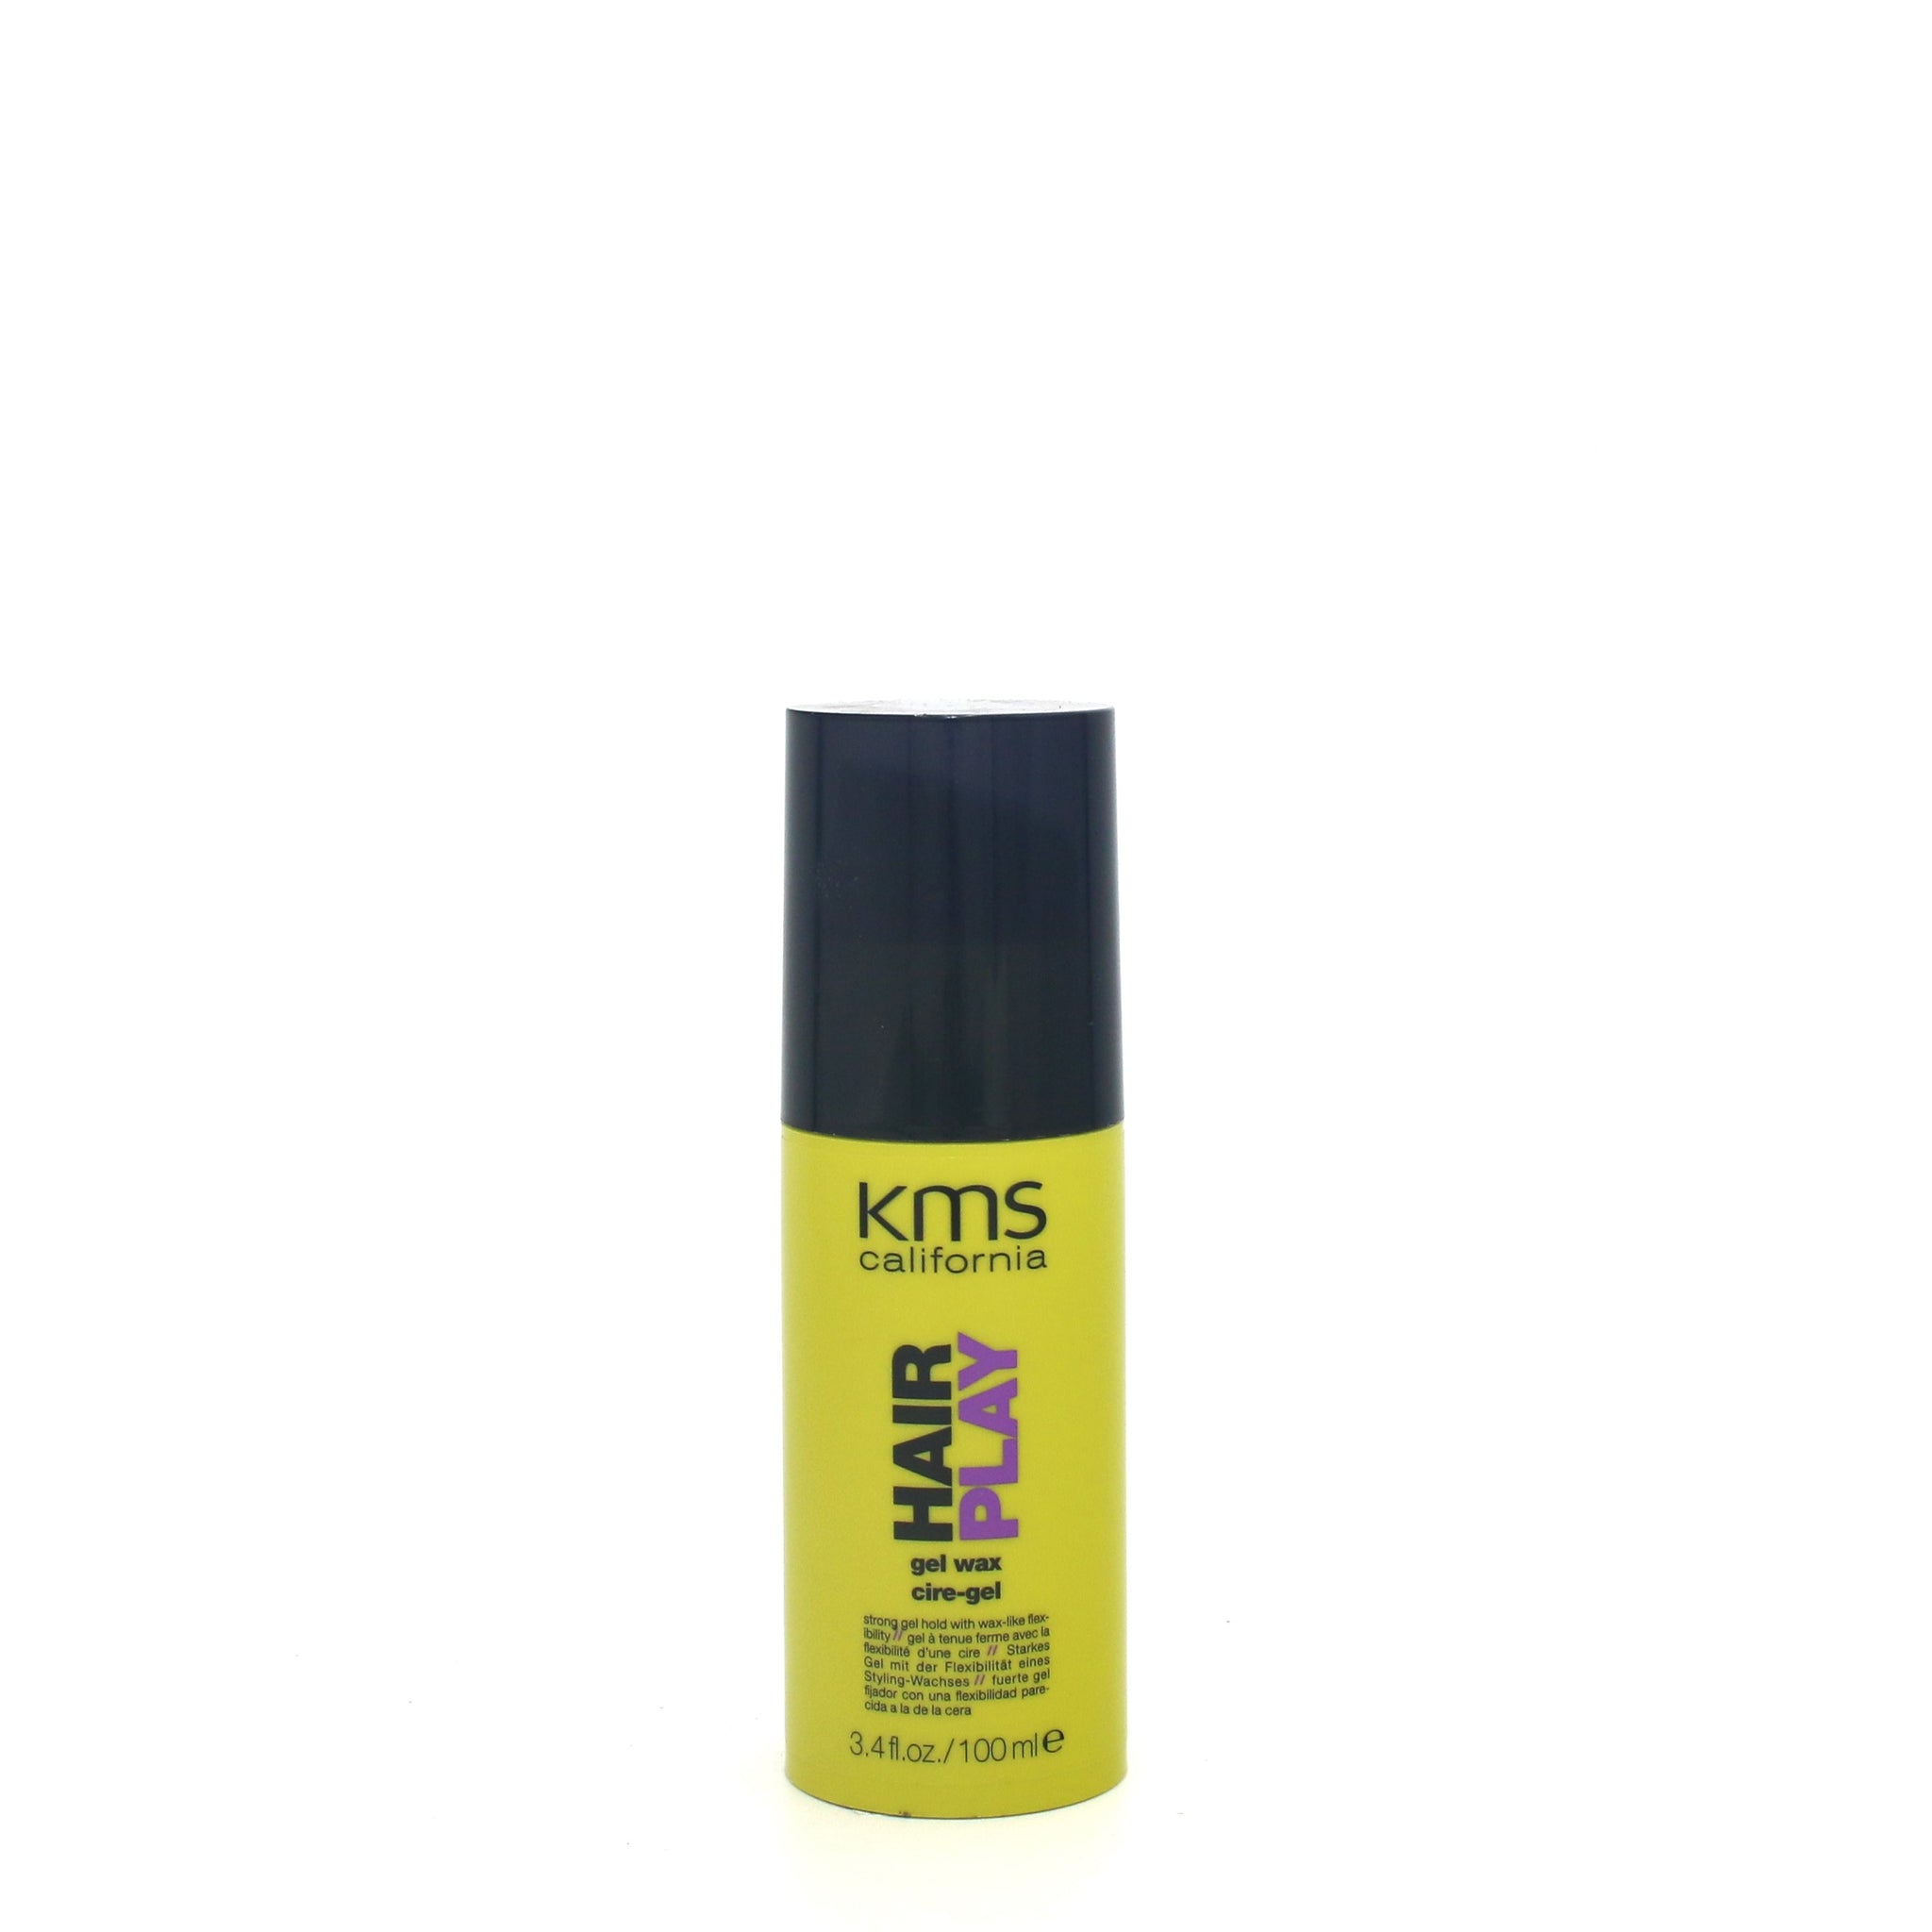 KMS Hair Play Gel Wax 3.4 oz